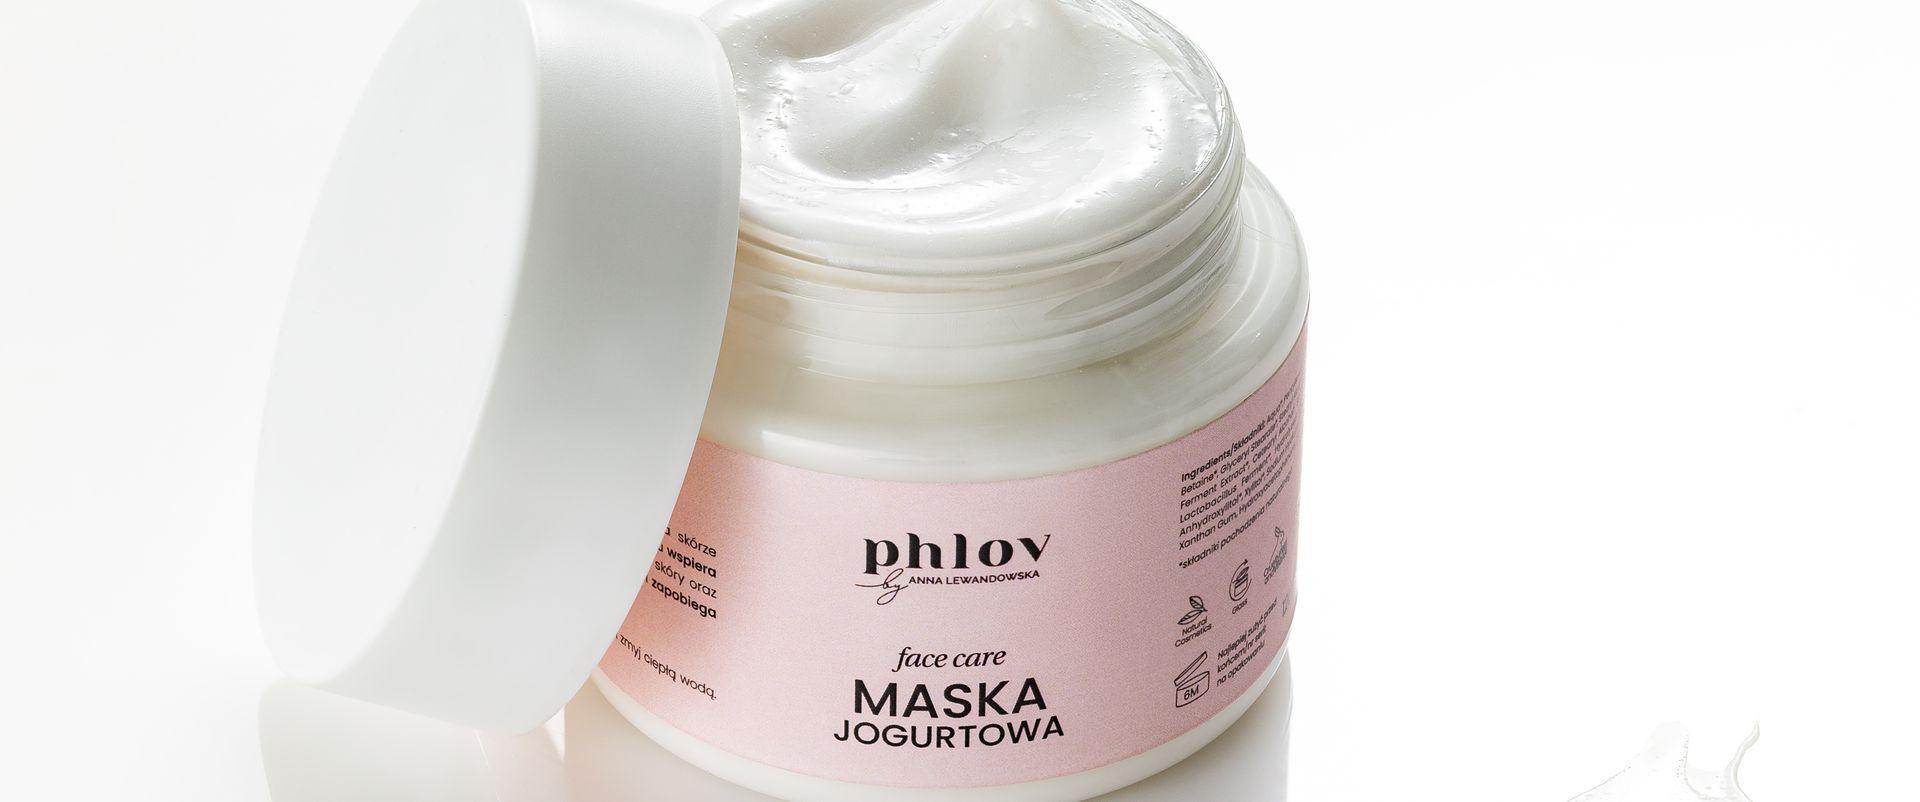 Maska jogurtowa Phlov by Anna Lewandowska dba o nawilżenie i wspiera regenerację